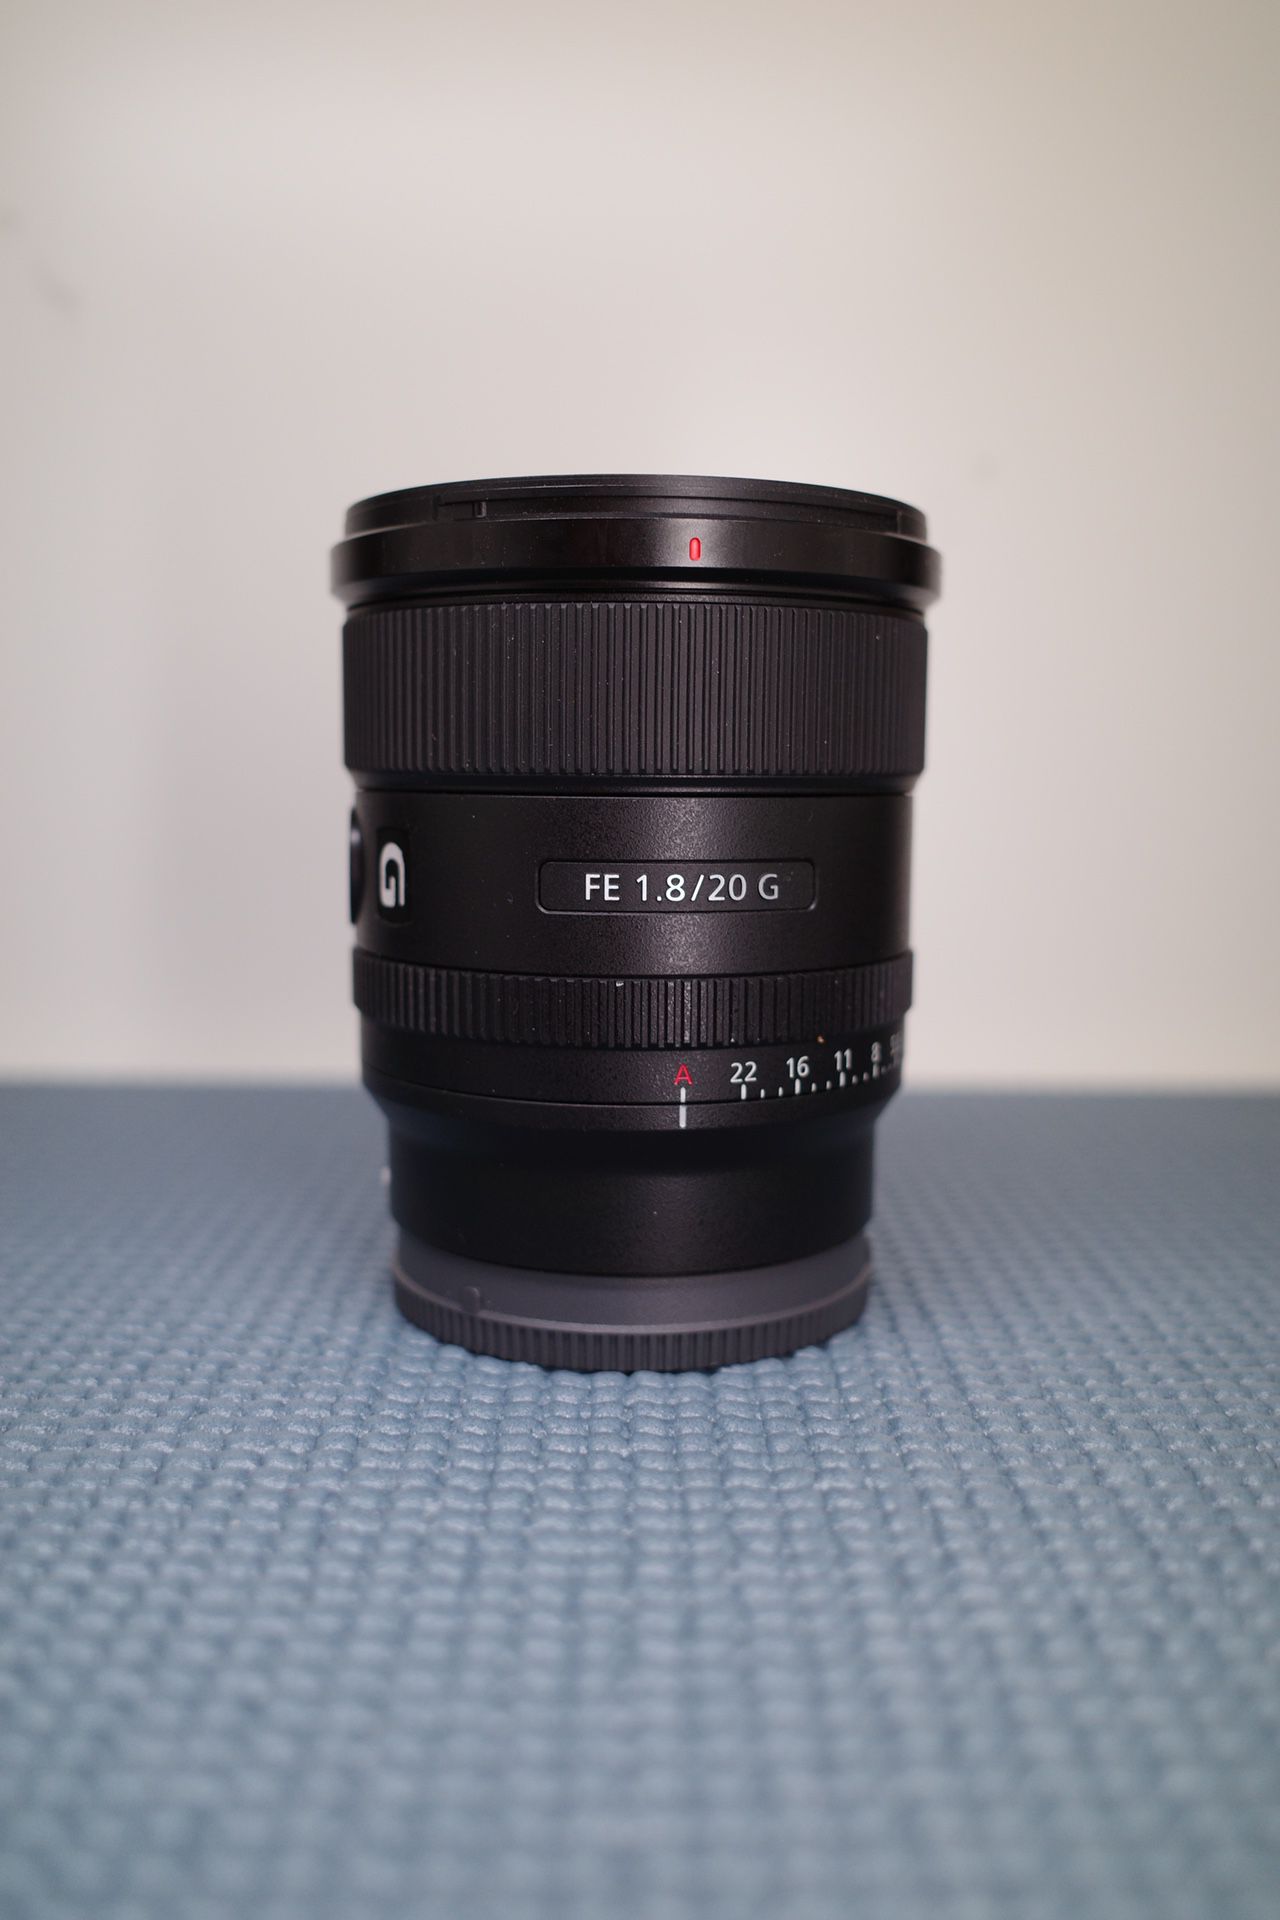 Sony 20mm 1.8 Lens Full Frame Lens